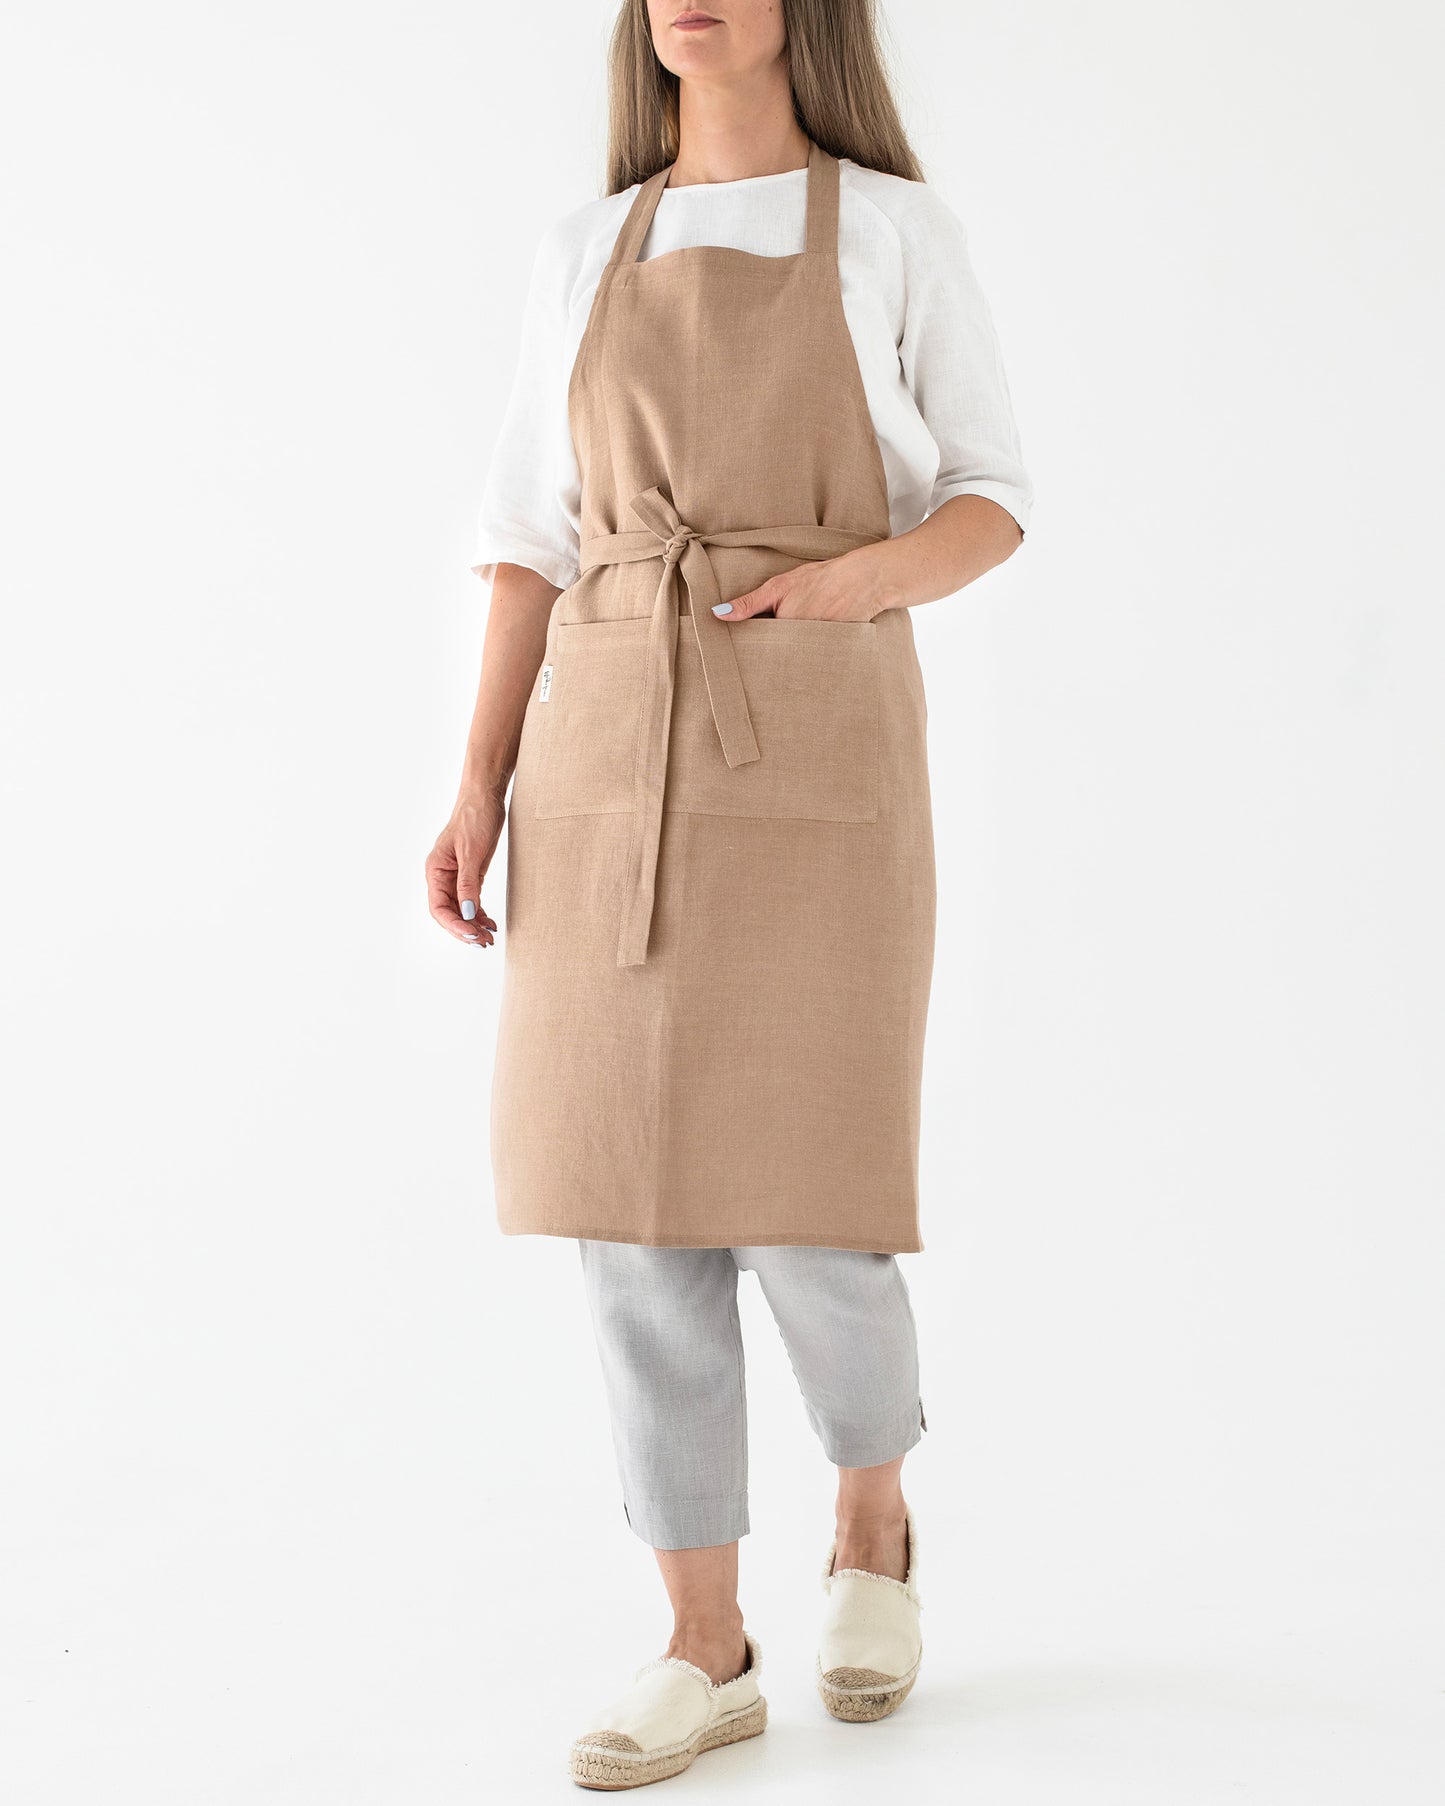 Linen bib apron in Latte - MagicLinen